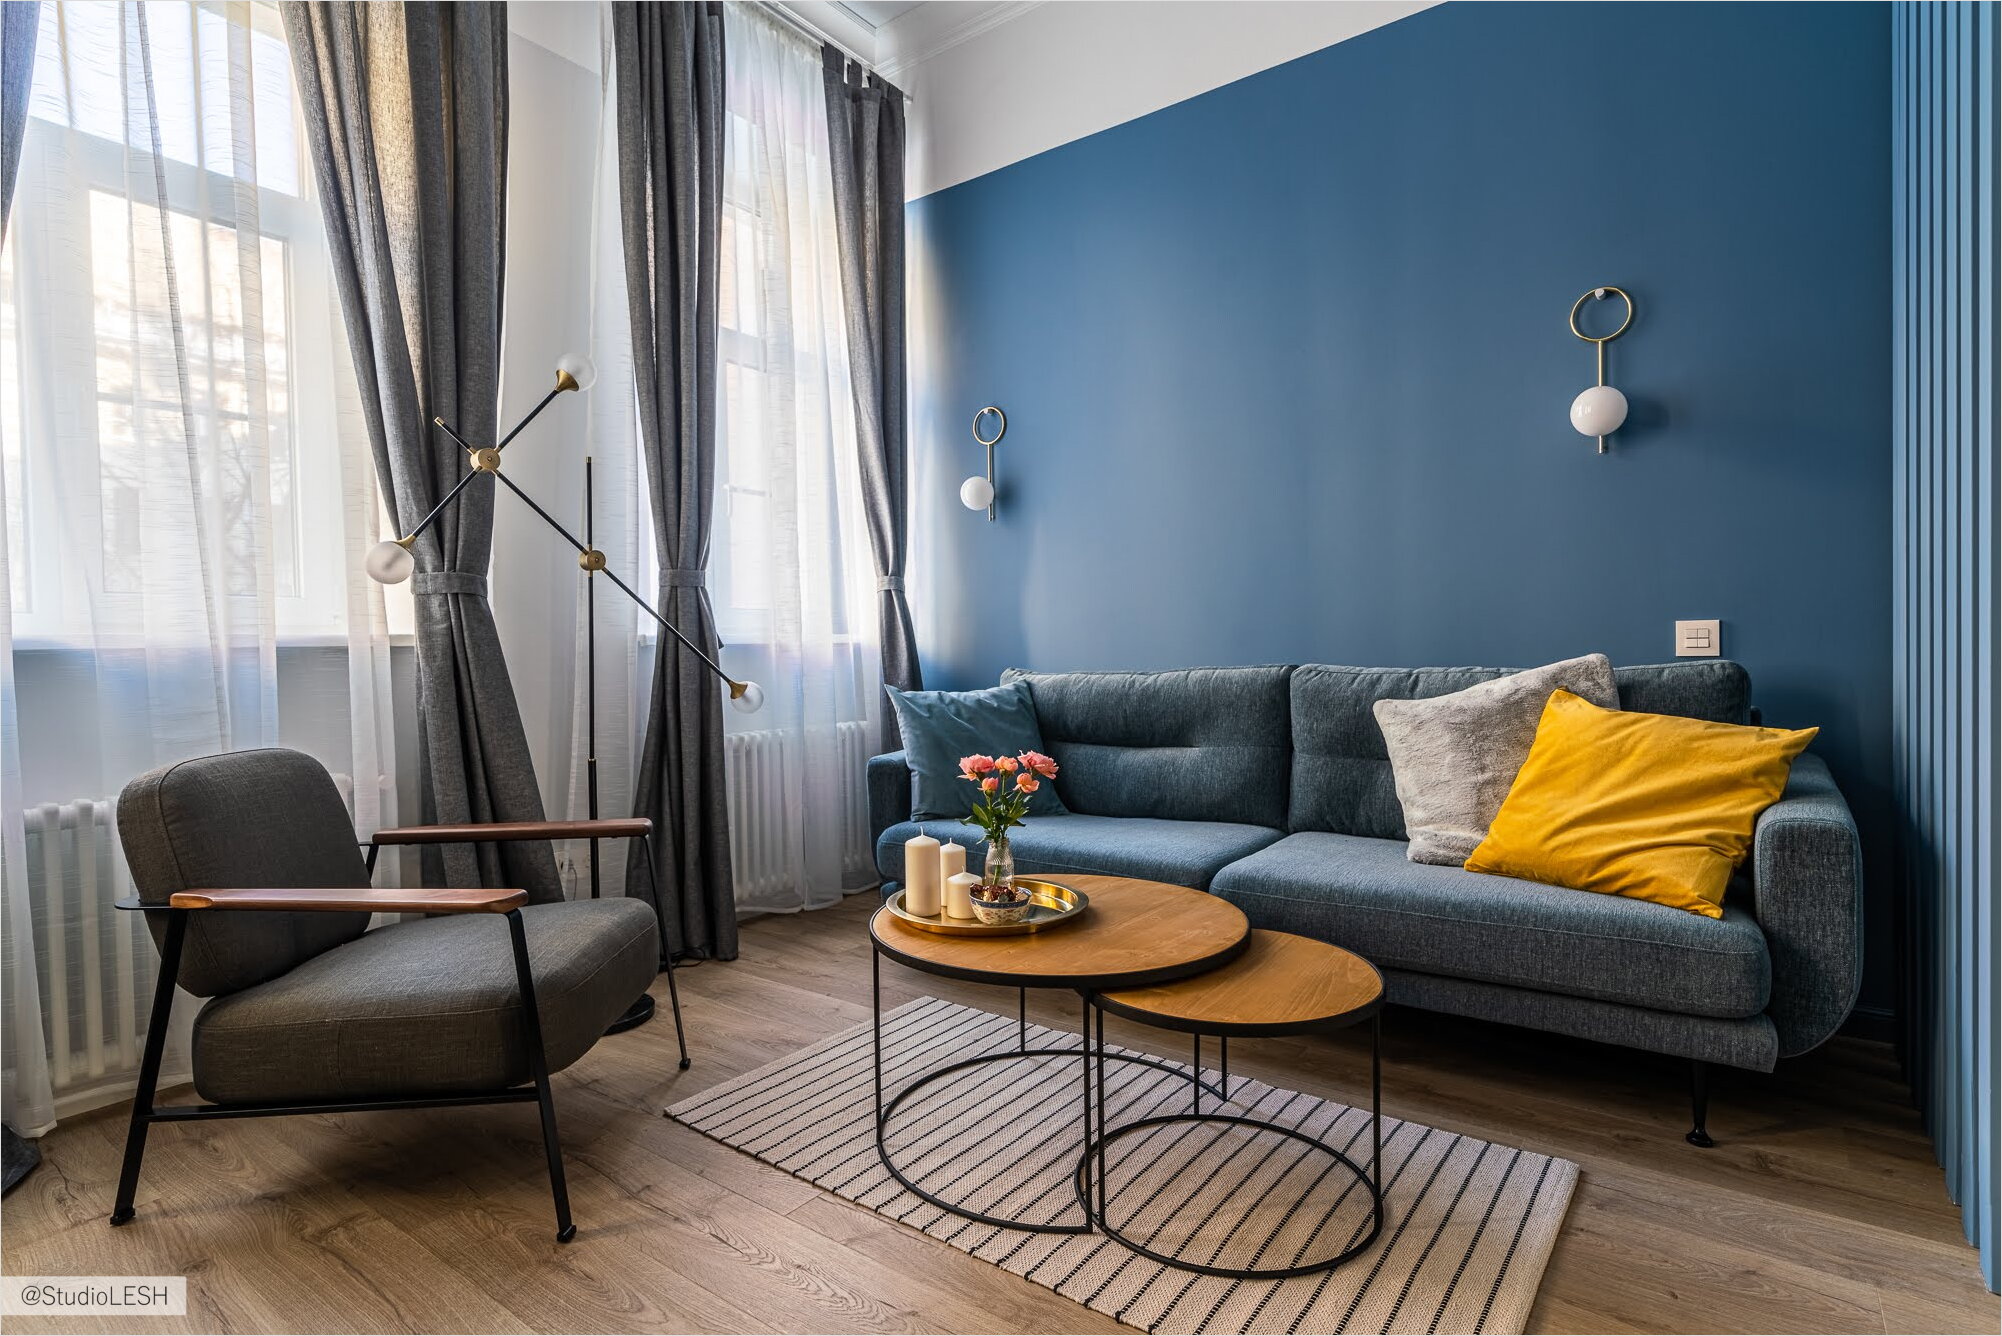 Дизайн интерьера гостиной в синим цвете